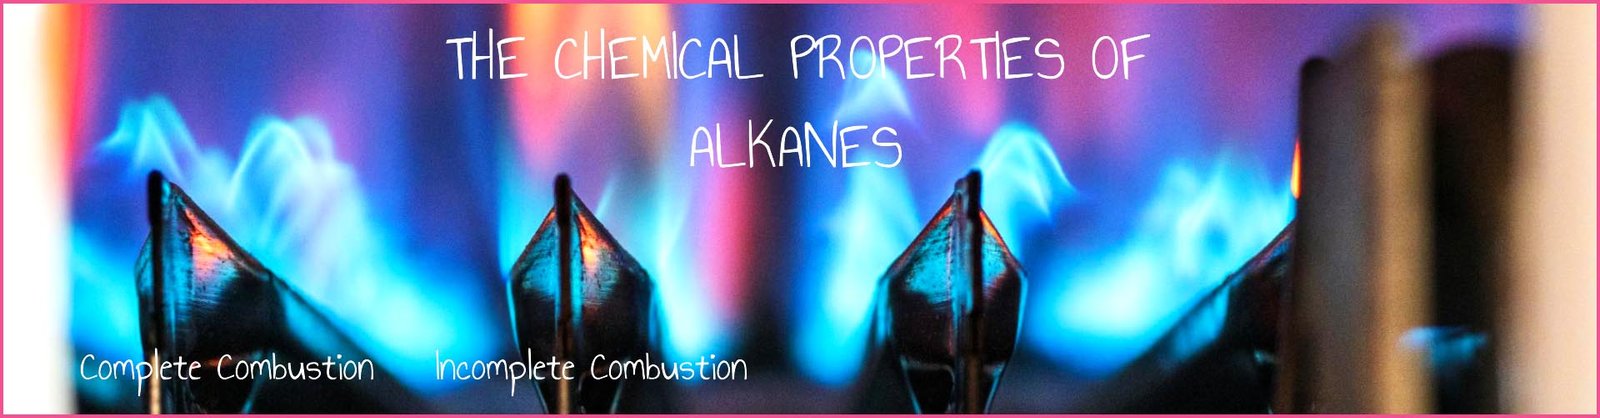 alkanes chemical properties